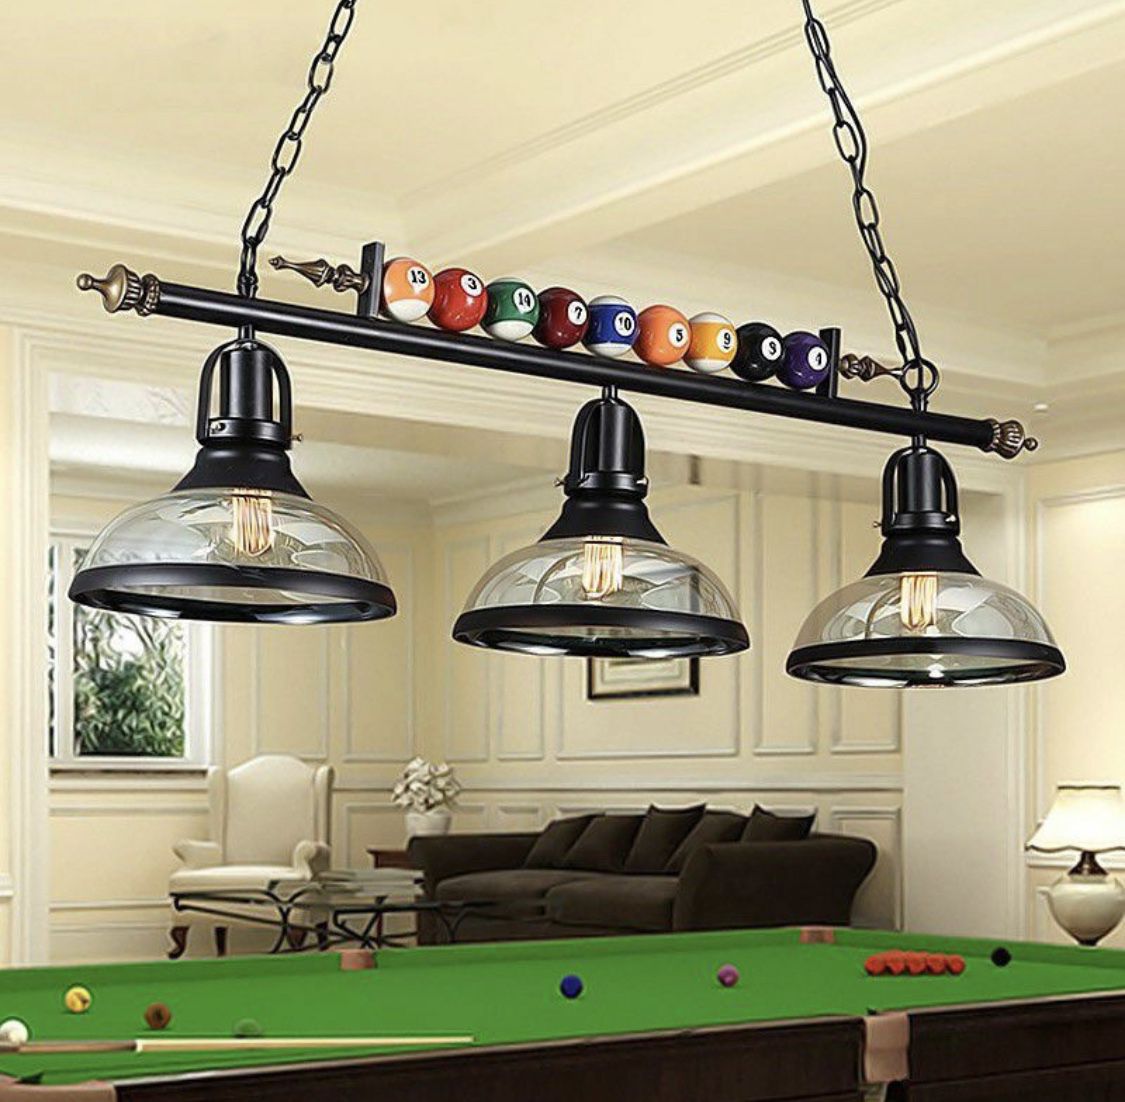 Table Pool Billiard Light Pendant Ceiling Fixture Lamp 💡